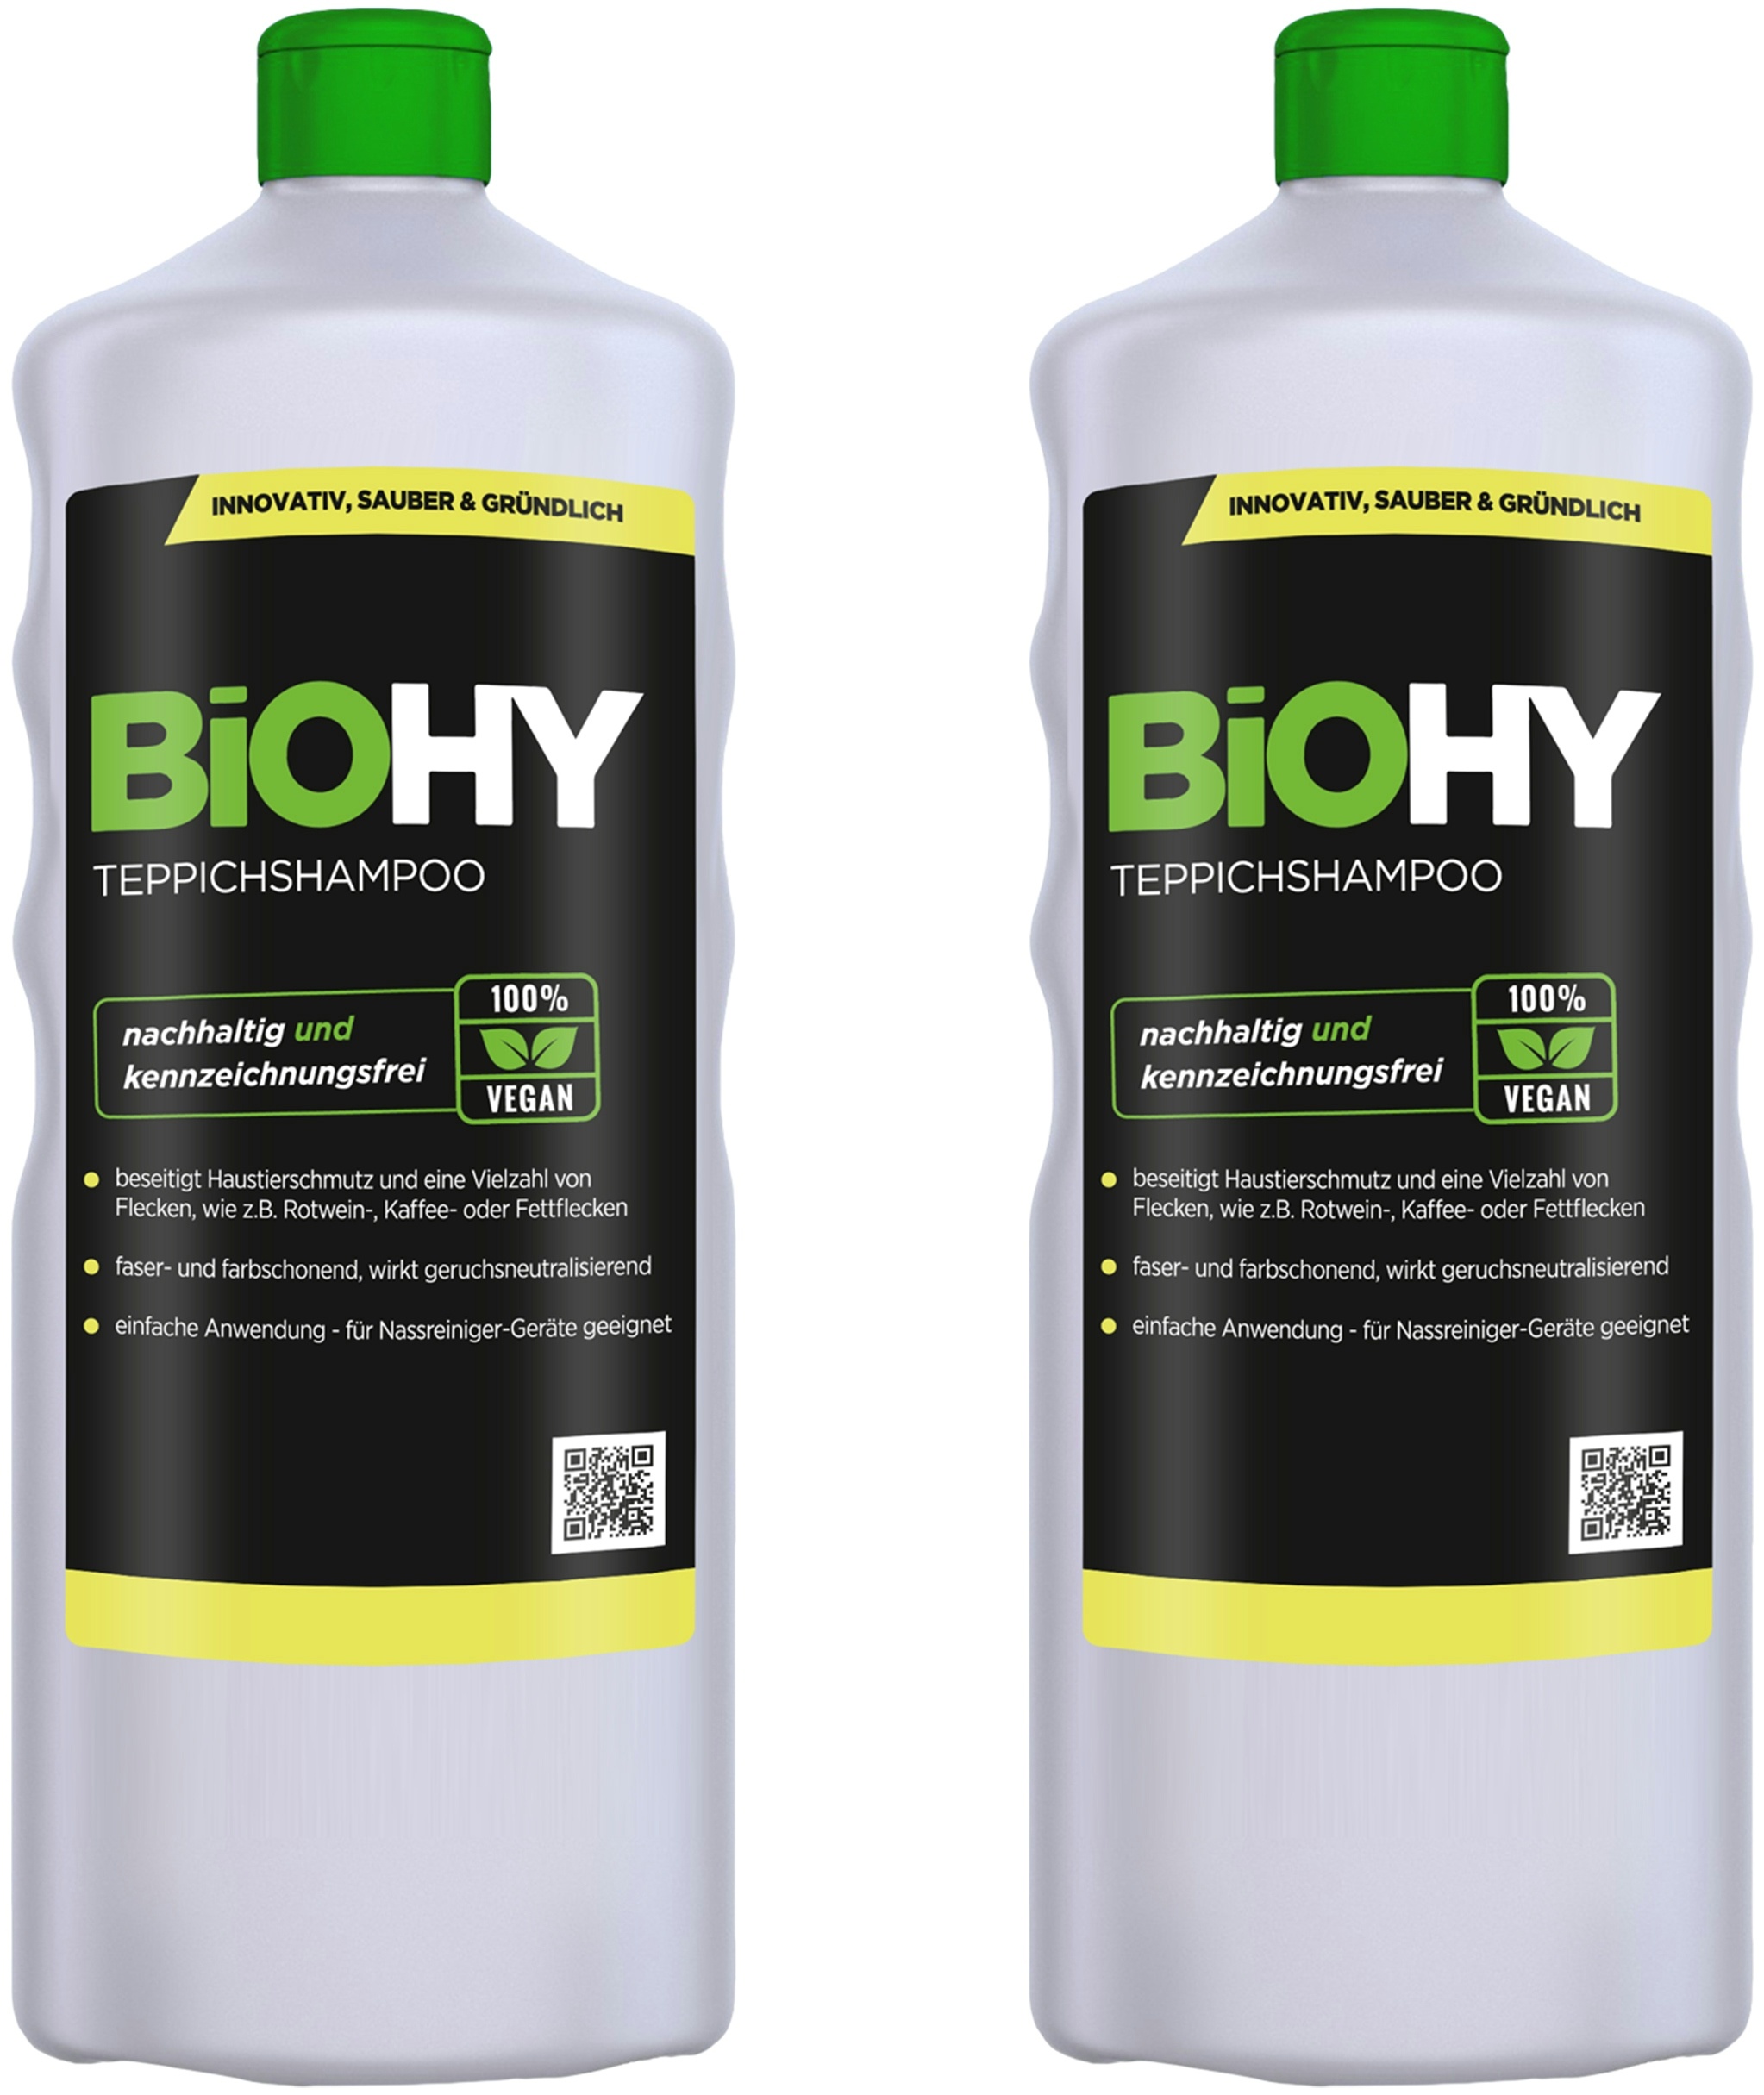 BiOHY Teppichshampoo (2x1l Flasche) | Teppichreiniger ideal zur Entfernung von hartnäckigen Flecken | SPEZIELL FÜR WASCHSAUGER ENTWICKELT